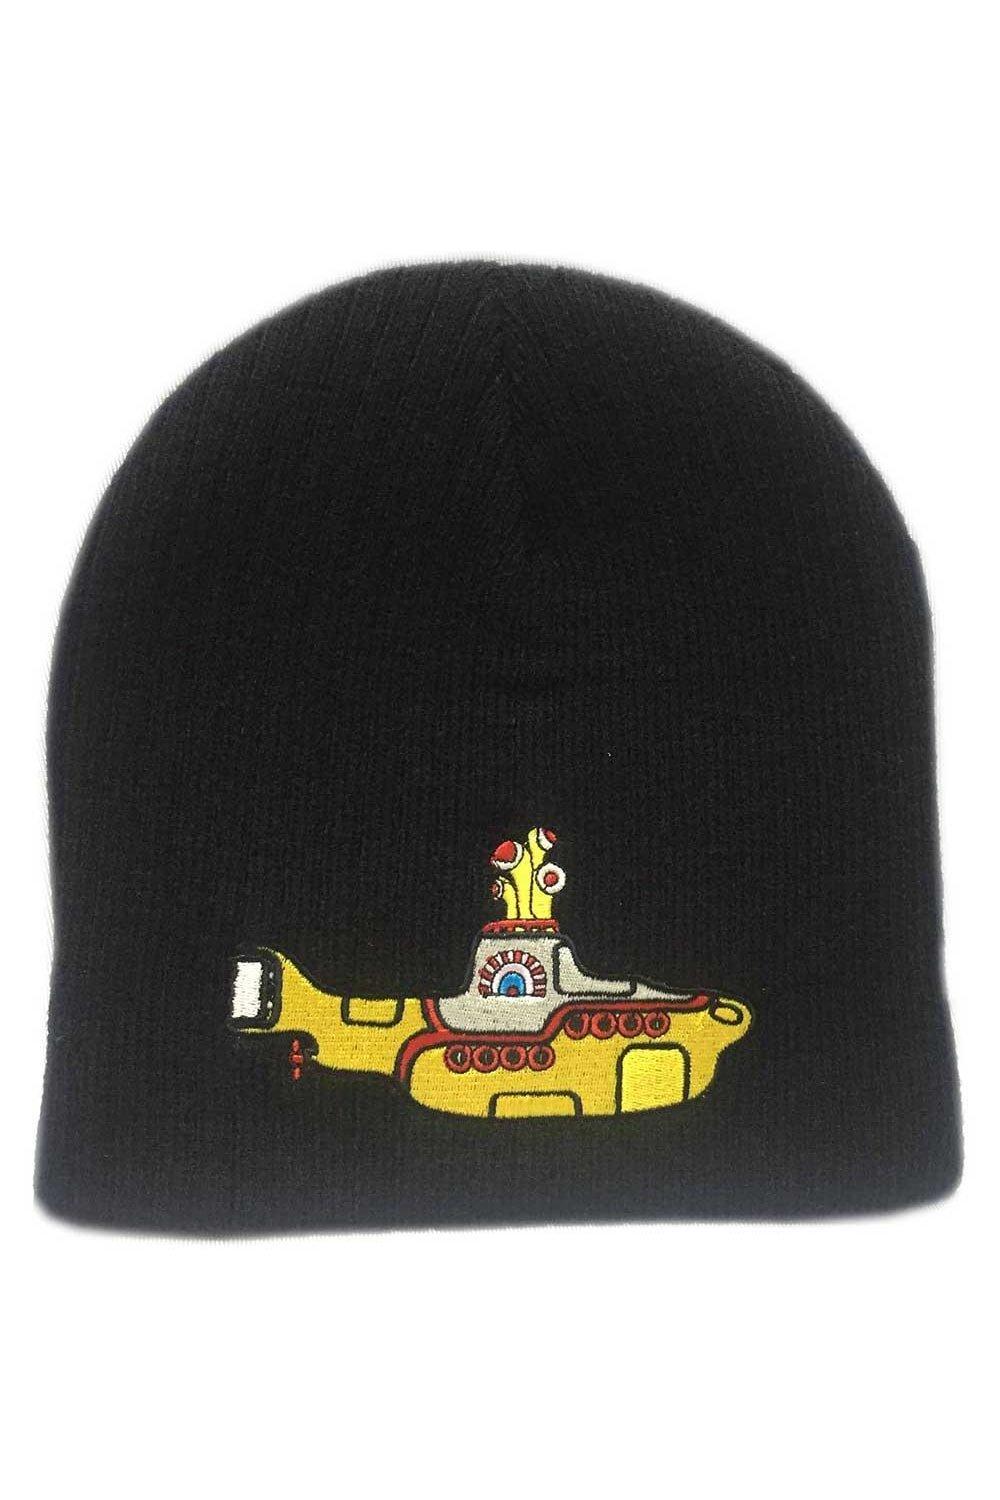 Желтая шапка с изображением подводной лодки The Beatles, черный carson радиоуправляемая подводная лодка xs deep sea dragon 100% rtr